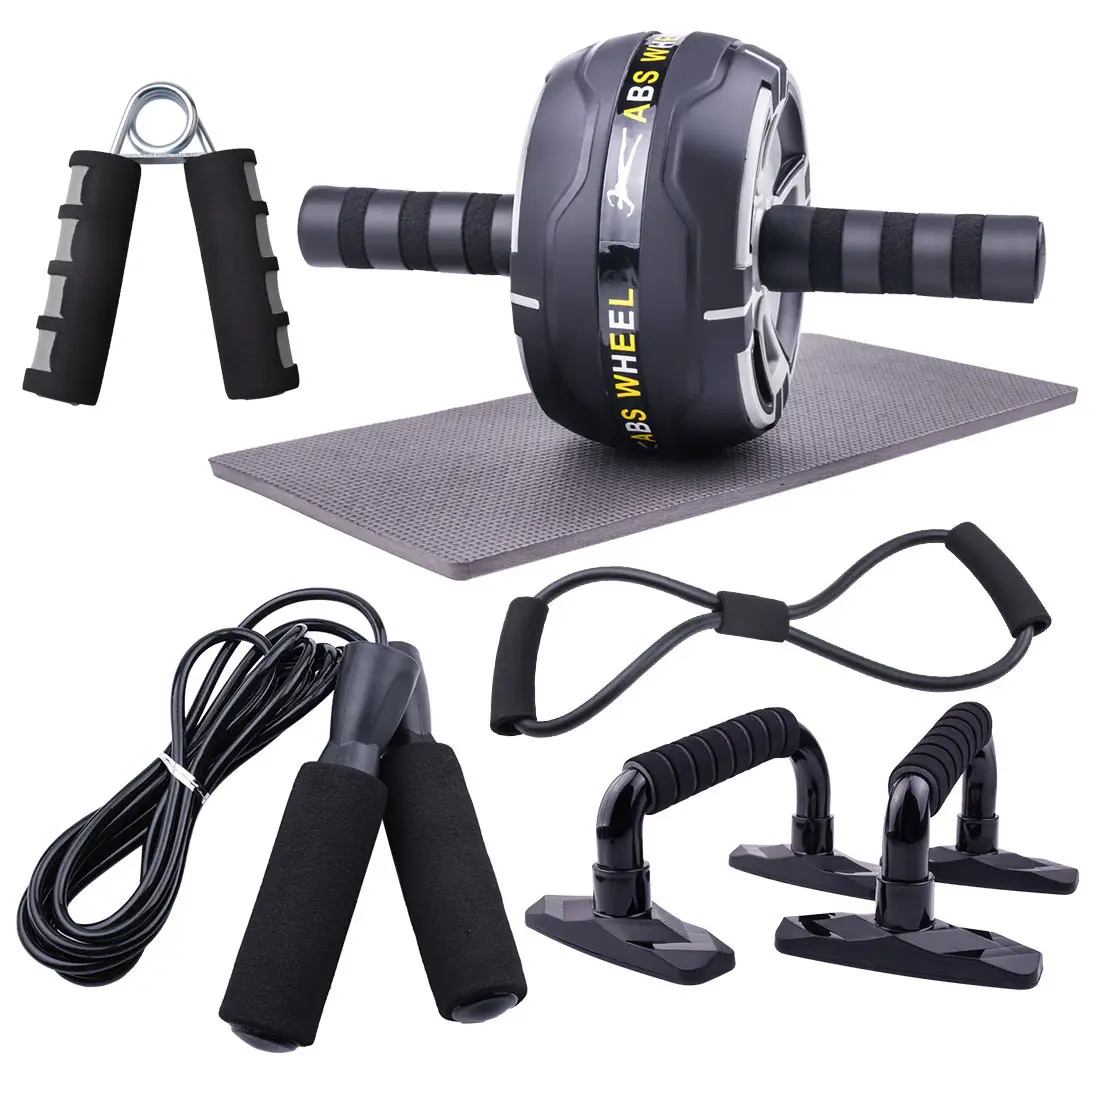 Kit de rueda de rodillo Ab, bandas de resistencia, cuerda para saltar, barra de realce, núcleo de fuerza, entrenamiento Abdominal, ejercicio, gimnasio en casa